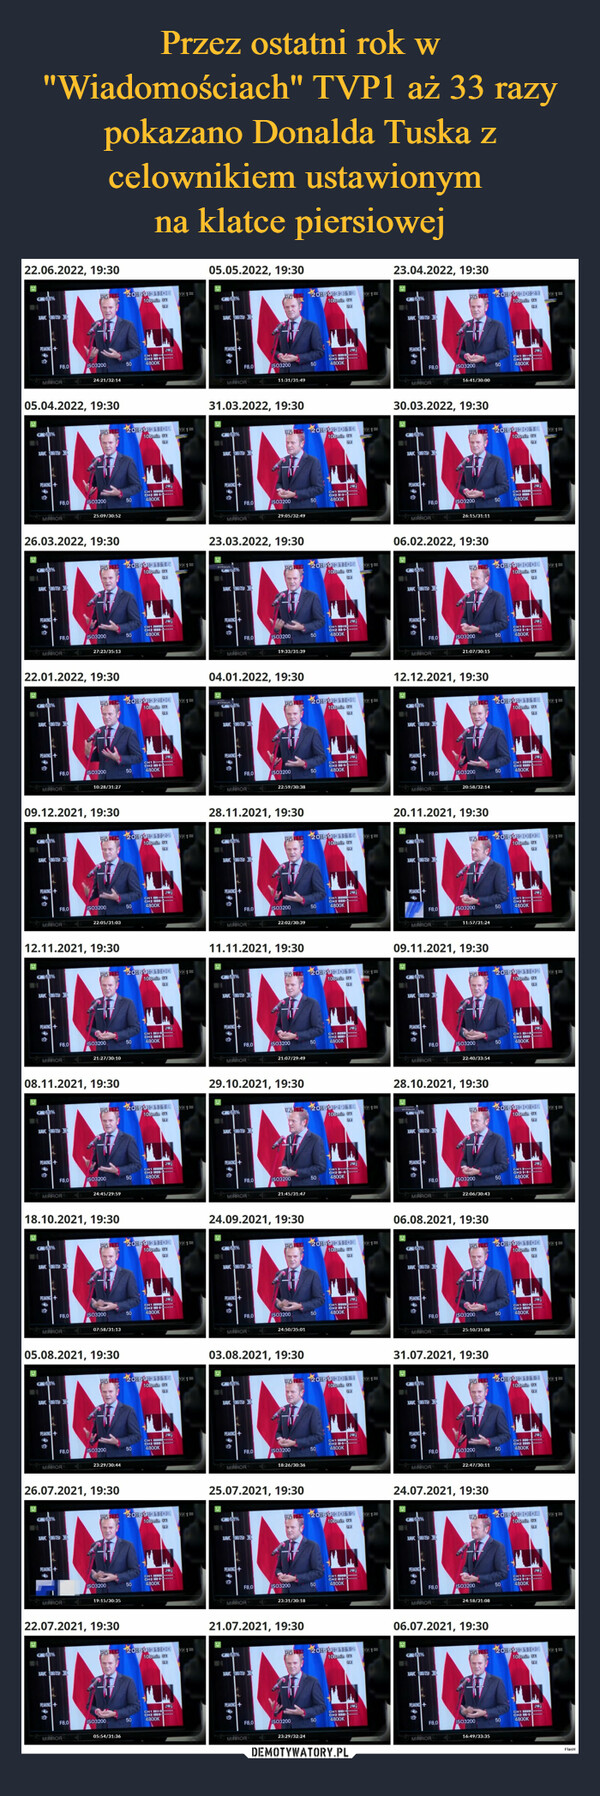 Przez ostatni rok w "Wiadomościach" TVP1 aż 33 razy pokazano Donalda Tuska z celownikiem ustawionym 
na klatce piersiowej